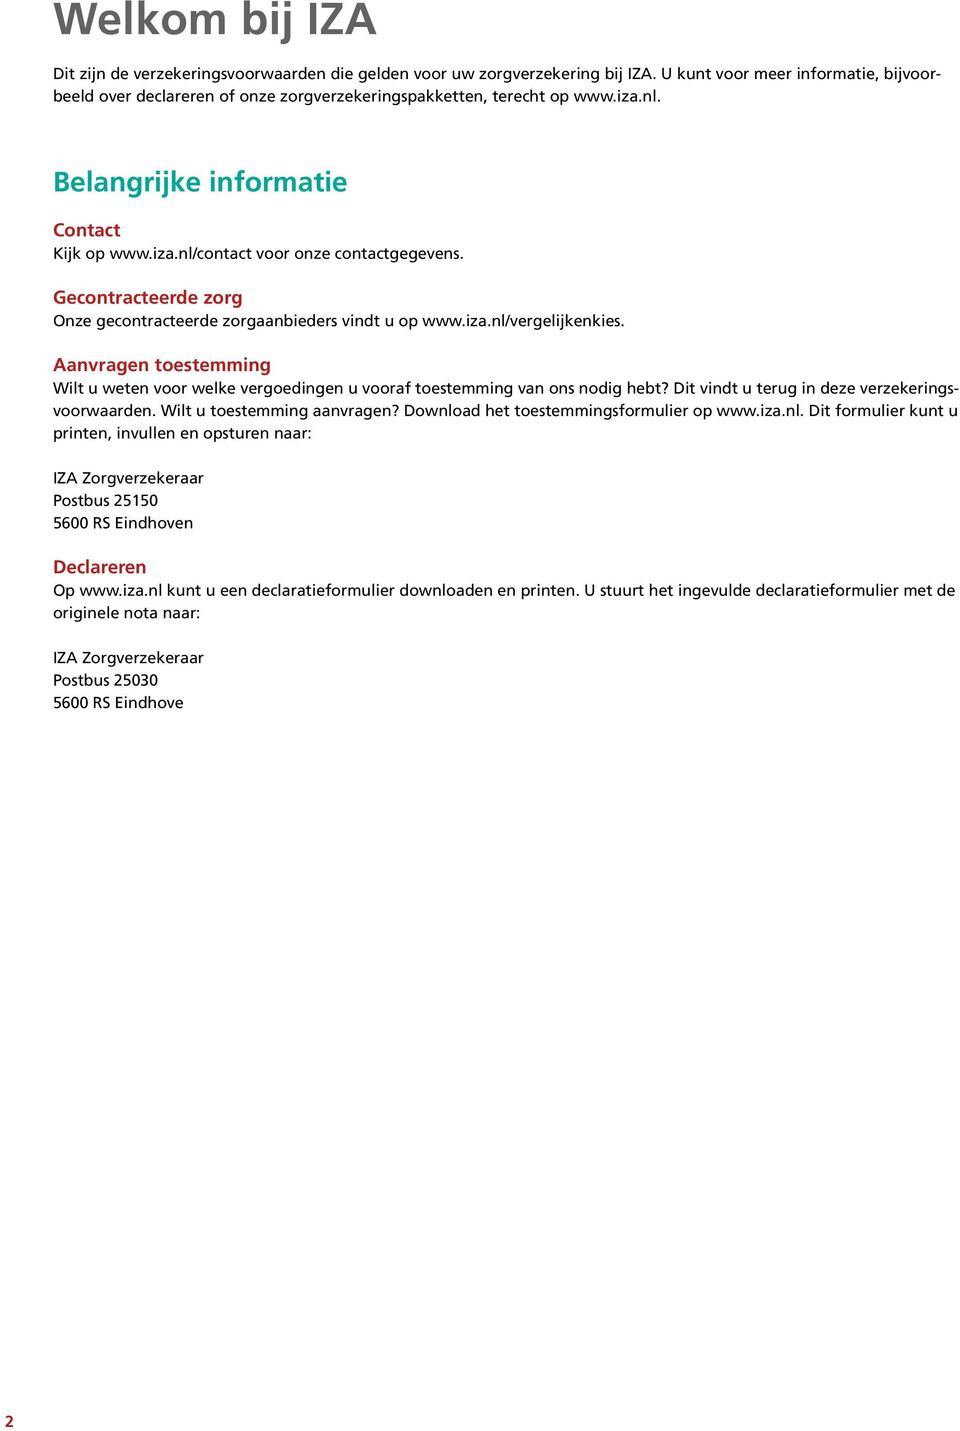 Gecontracteerde zorg Onze gecontracteerde zorgaanbieders vindt u op www.iza.nl/vergelijkenkies. Aanvragen toestemming Wilt u weten voor welke vergoedingen u vooraf toestemming van ons nodig hebt?